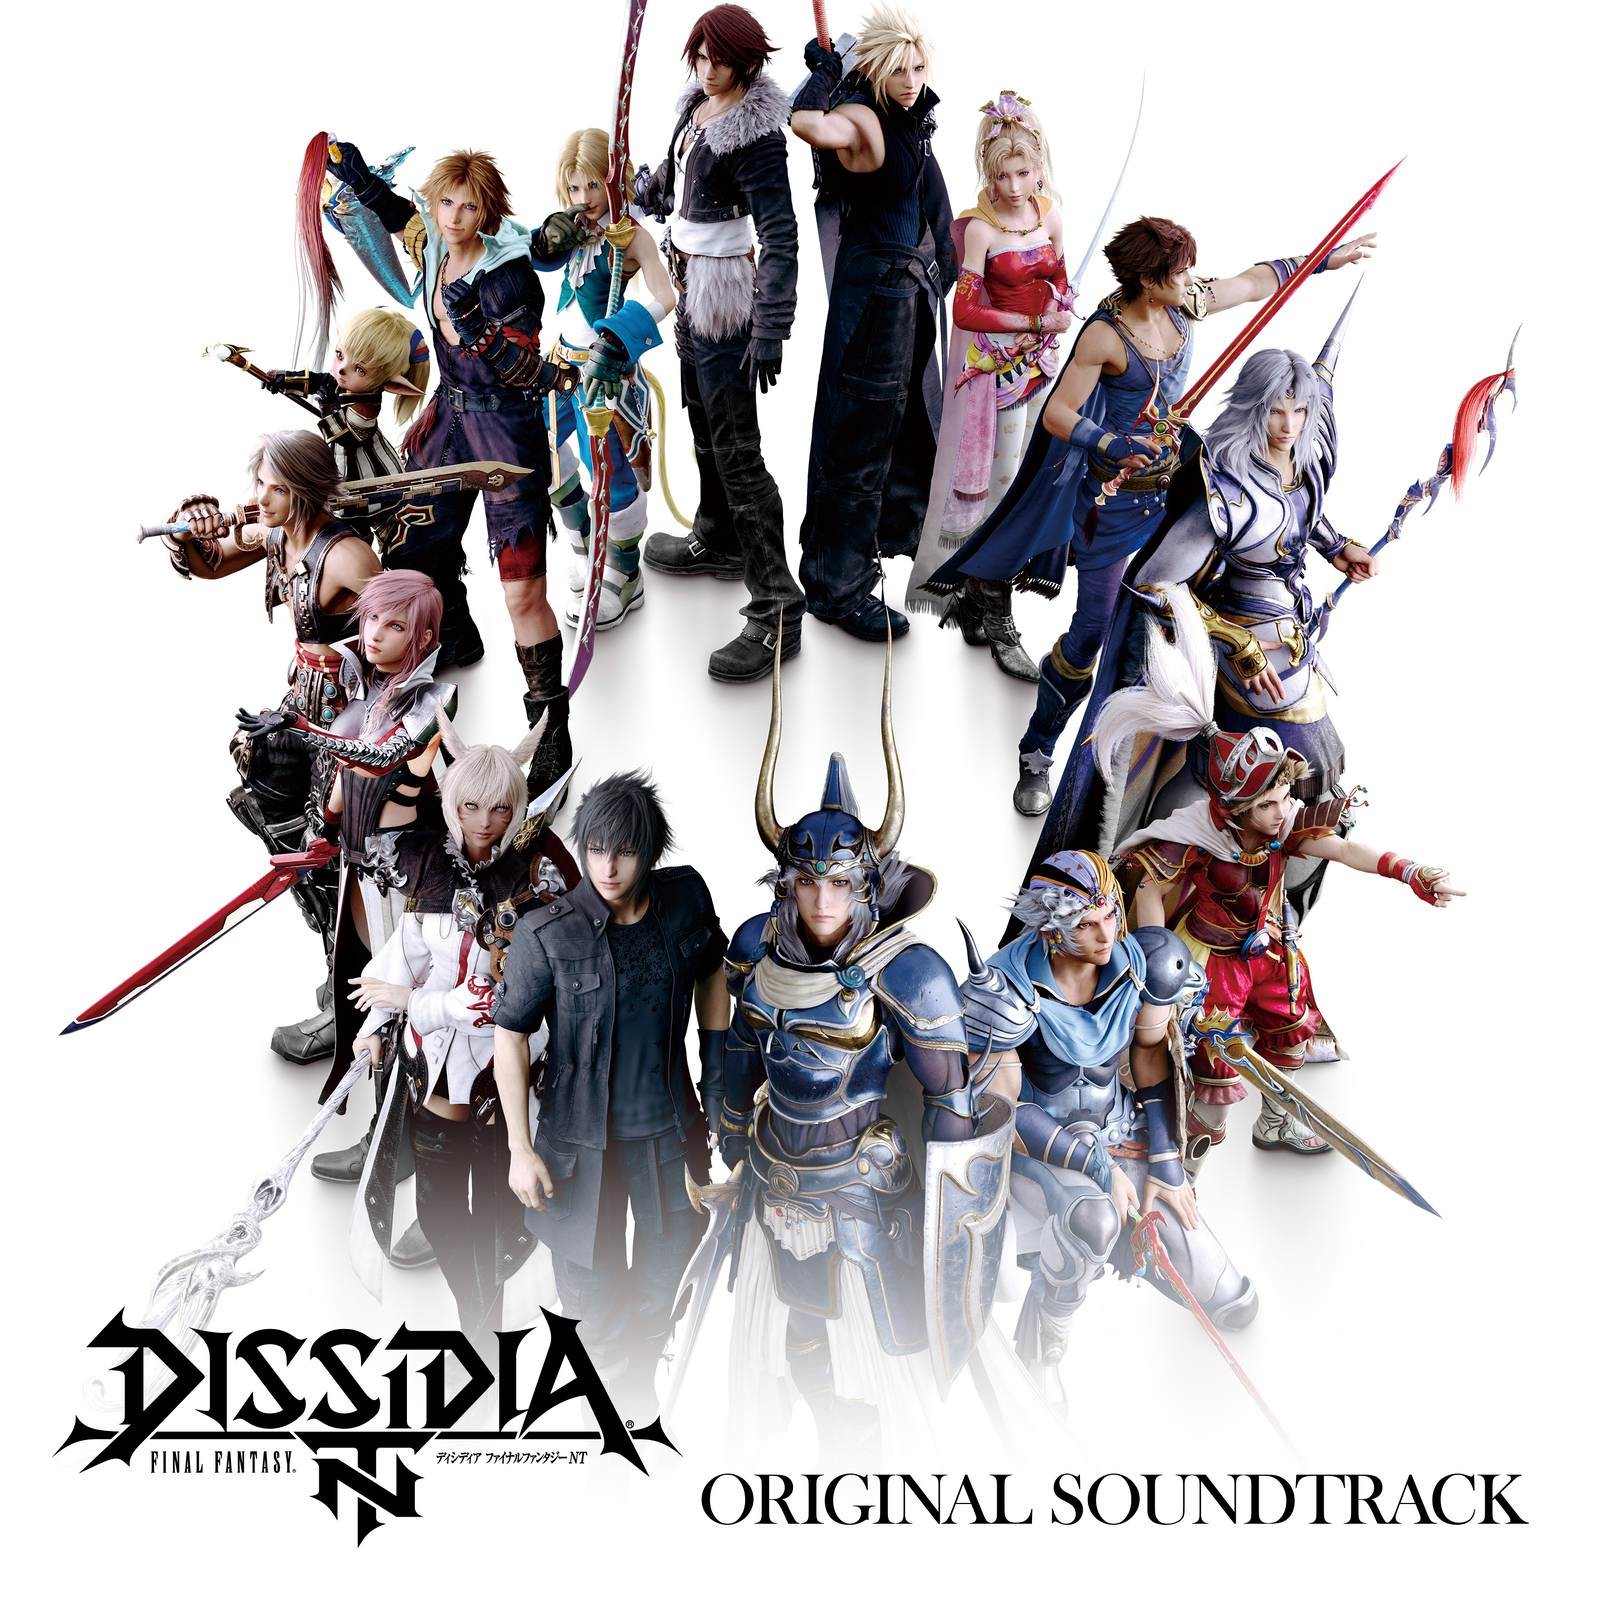 VA - DISSIDIA FINAL FANTASY NT Original Soundtrack [Mora FLAC 24bit/96kHz]